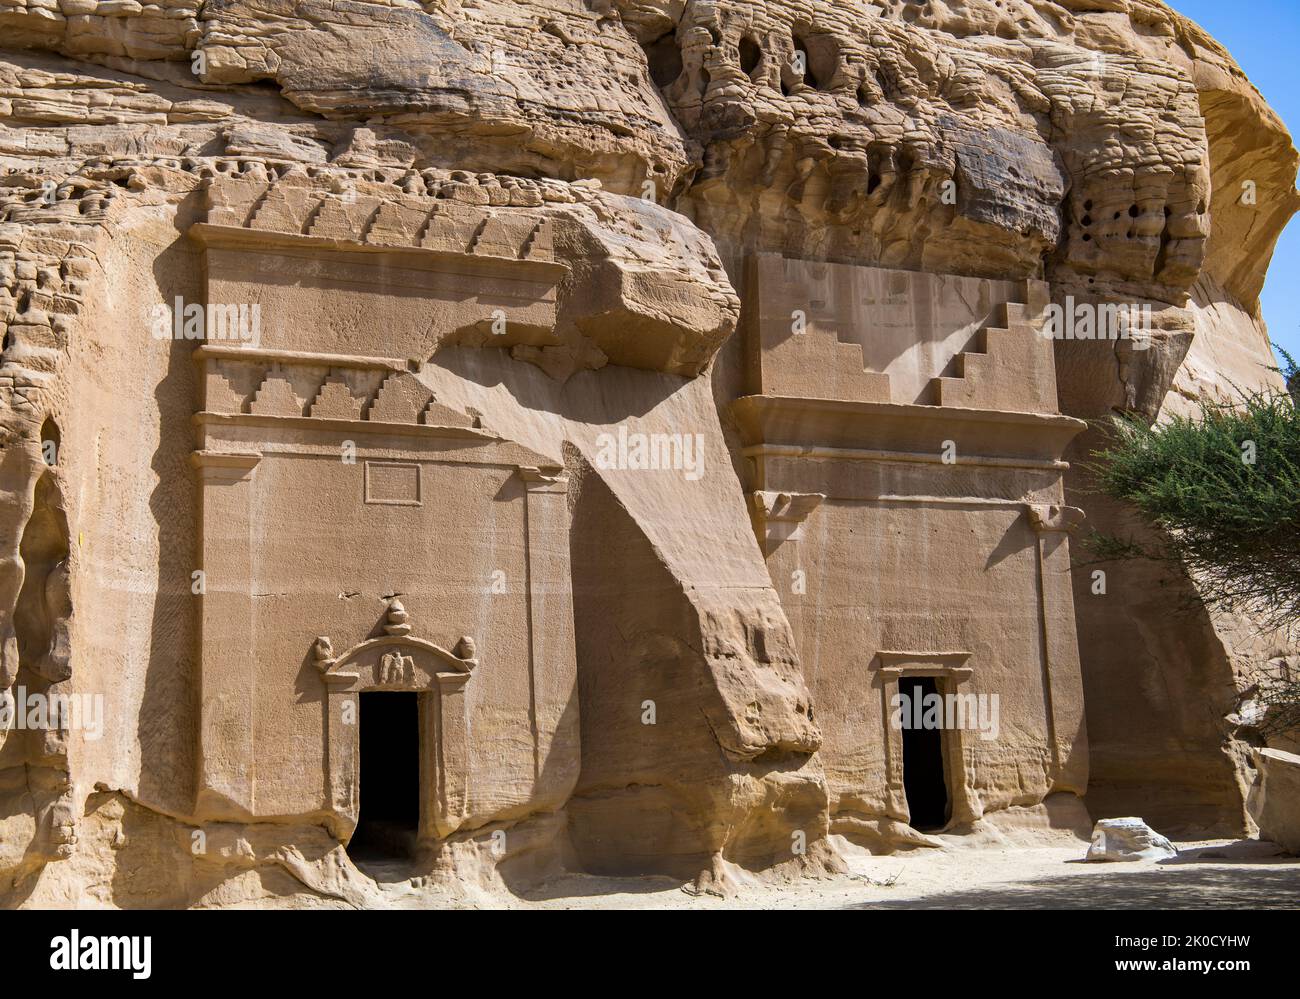 Deux tombes habilement sculptées côte à côte Jabal Al Banat Hegra Arabie Saoudite Banque D'Images